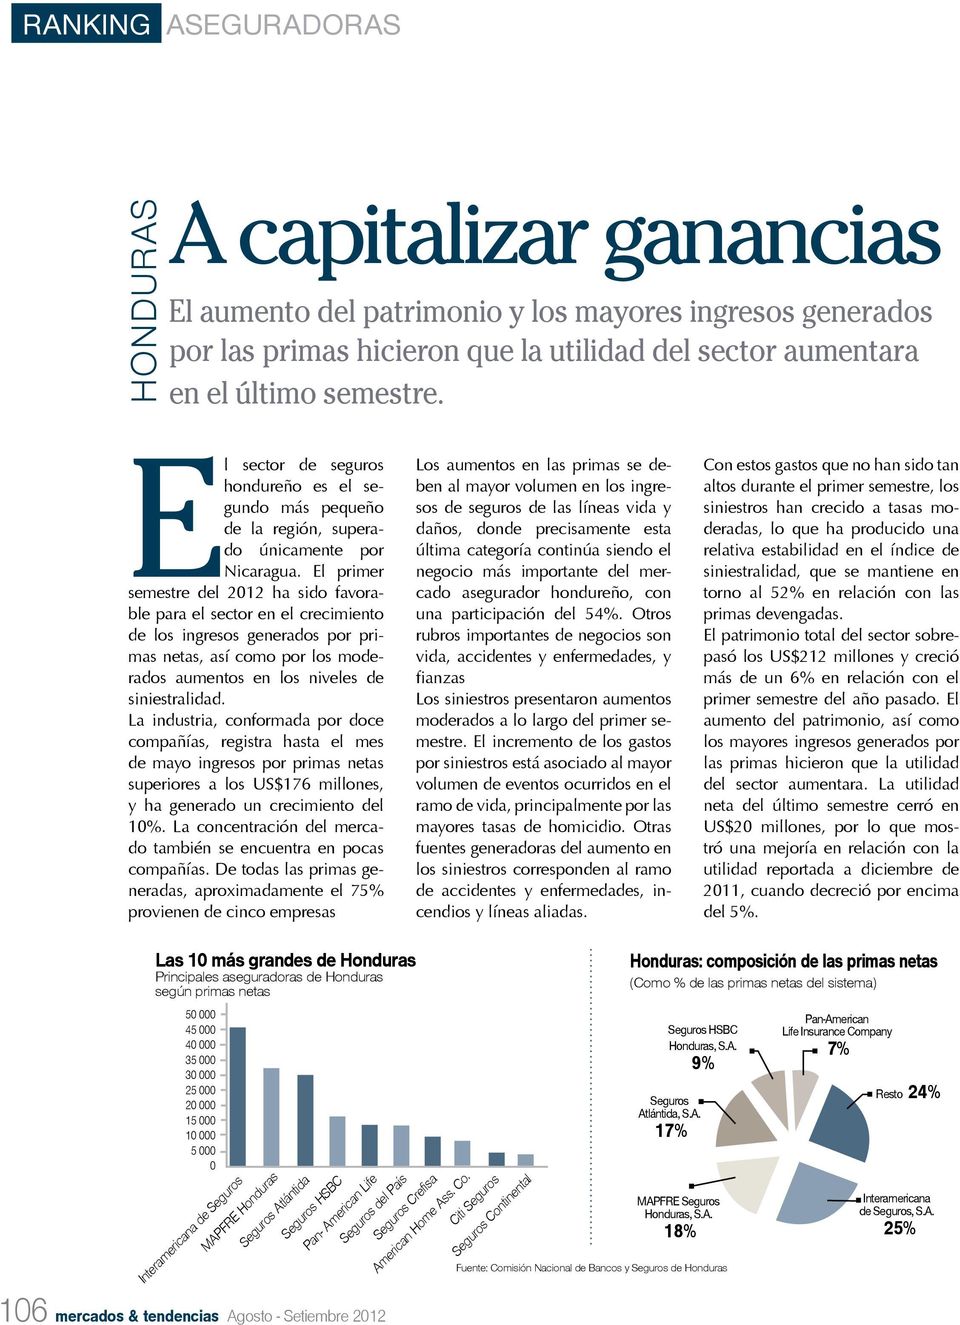 El primer semestre del 2012 ha sido favorable para el sector en el crecimiento de los ingresos generados por primas netas, así como por los moderados aumentos en los niveles de siniestralidad.